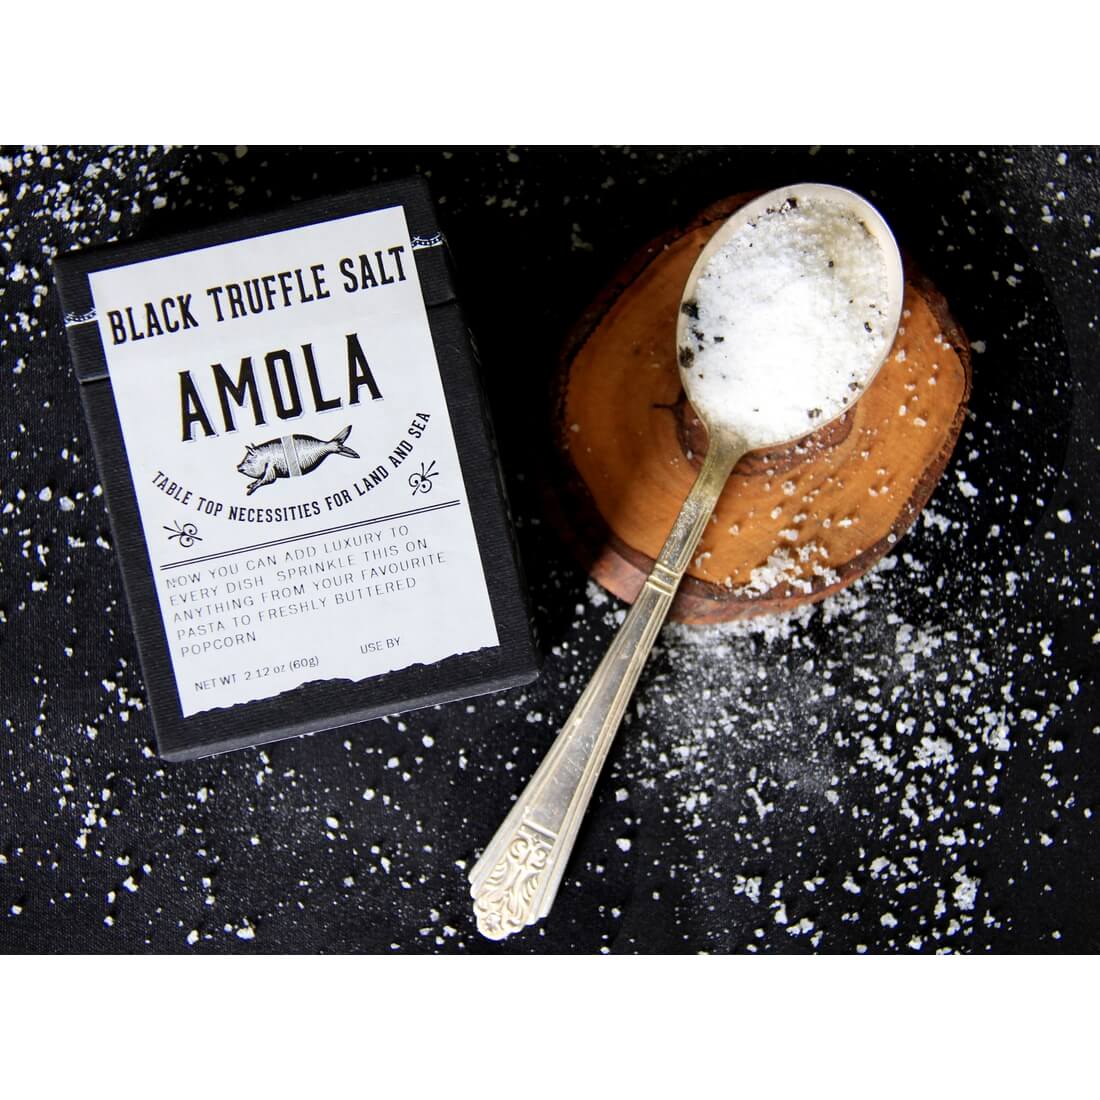 Black Truffle Salt by Amola Salt Kitchen Amola Salt Prettycleanshop